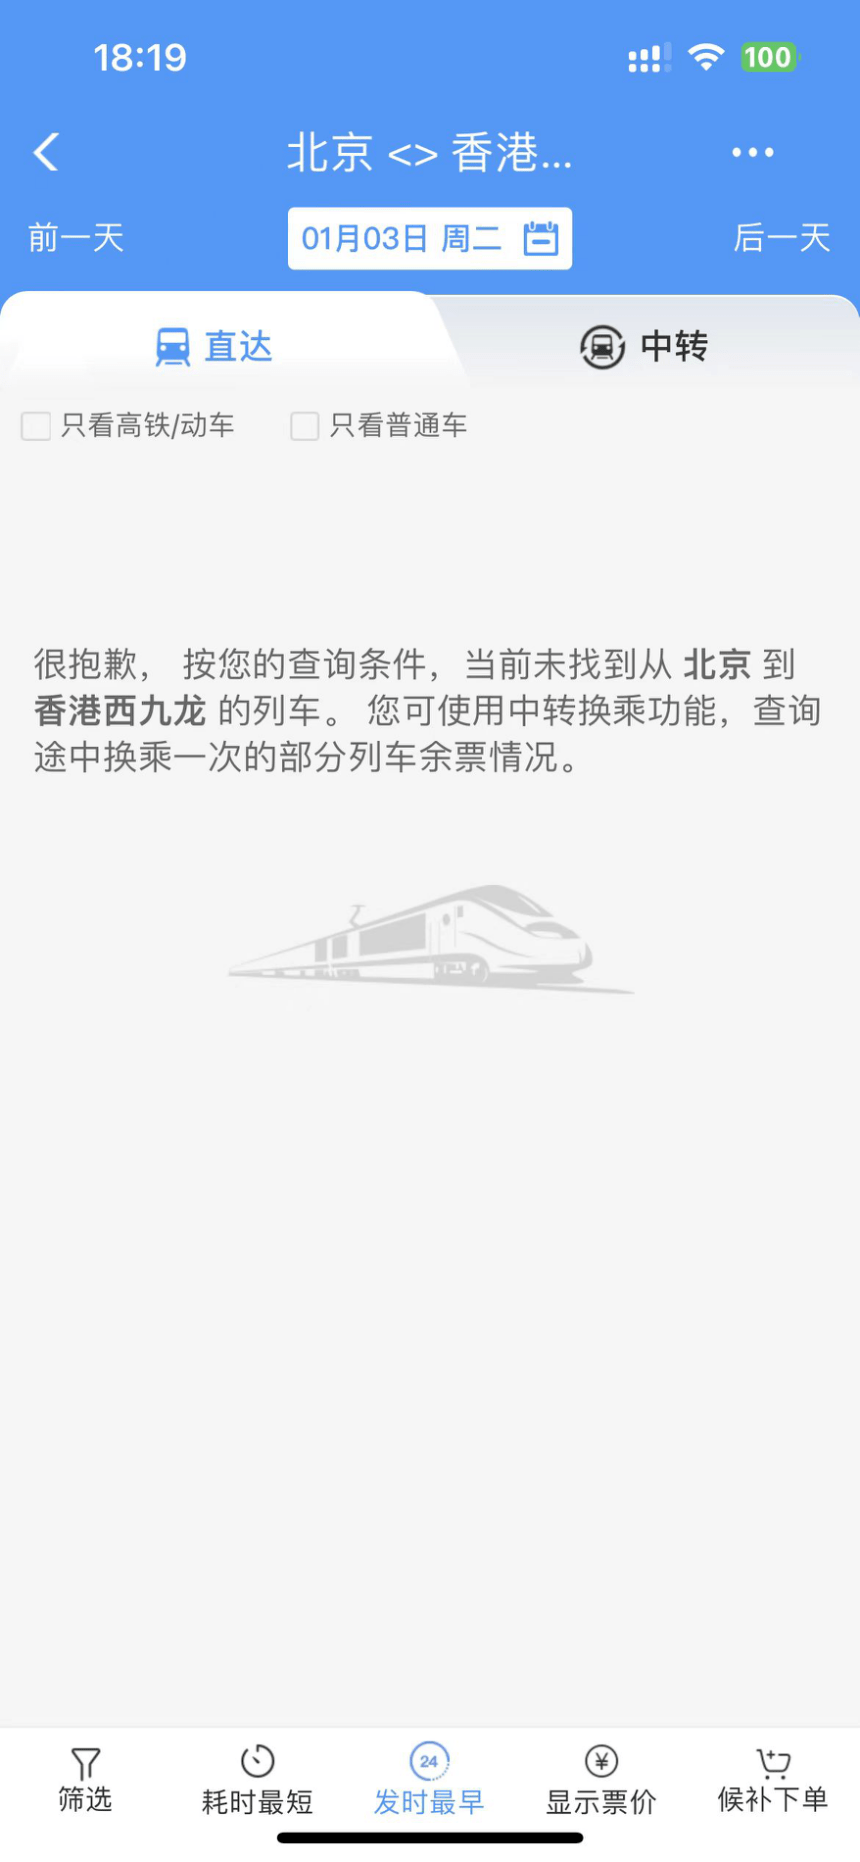 「12306 APP」明年1月3日未有北京赴港列車班次。網上圖片